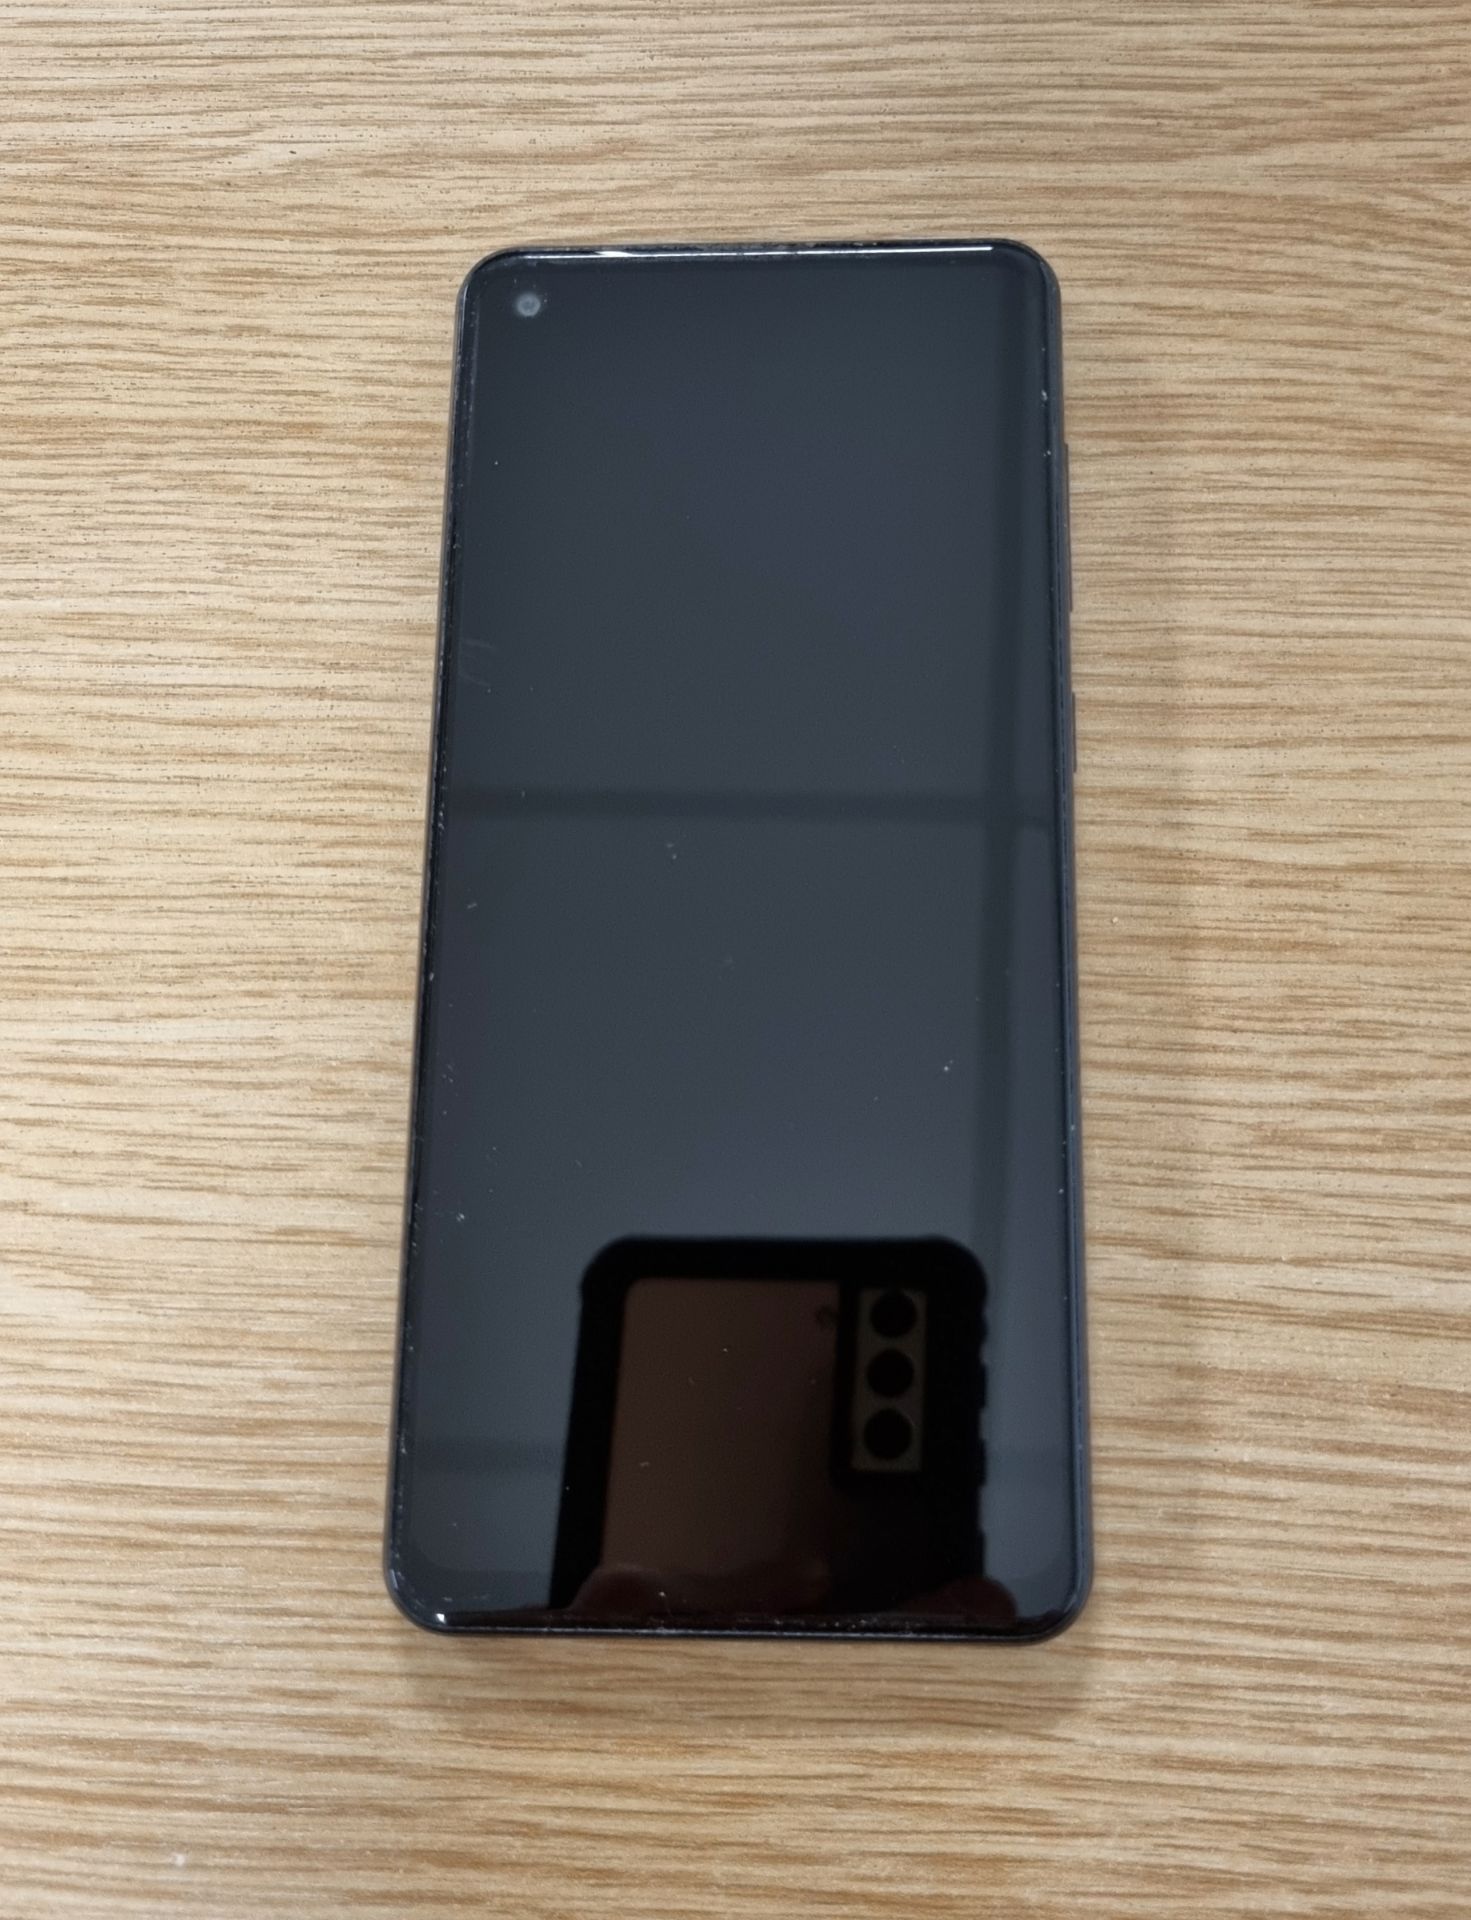 Samsung Galaxy A21s - handset only – factory reset - Bild 4 aus 10